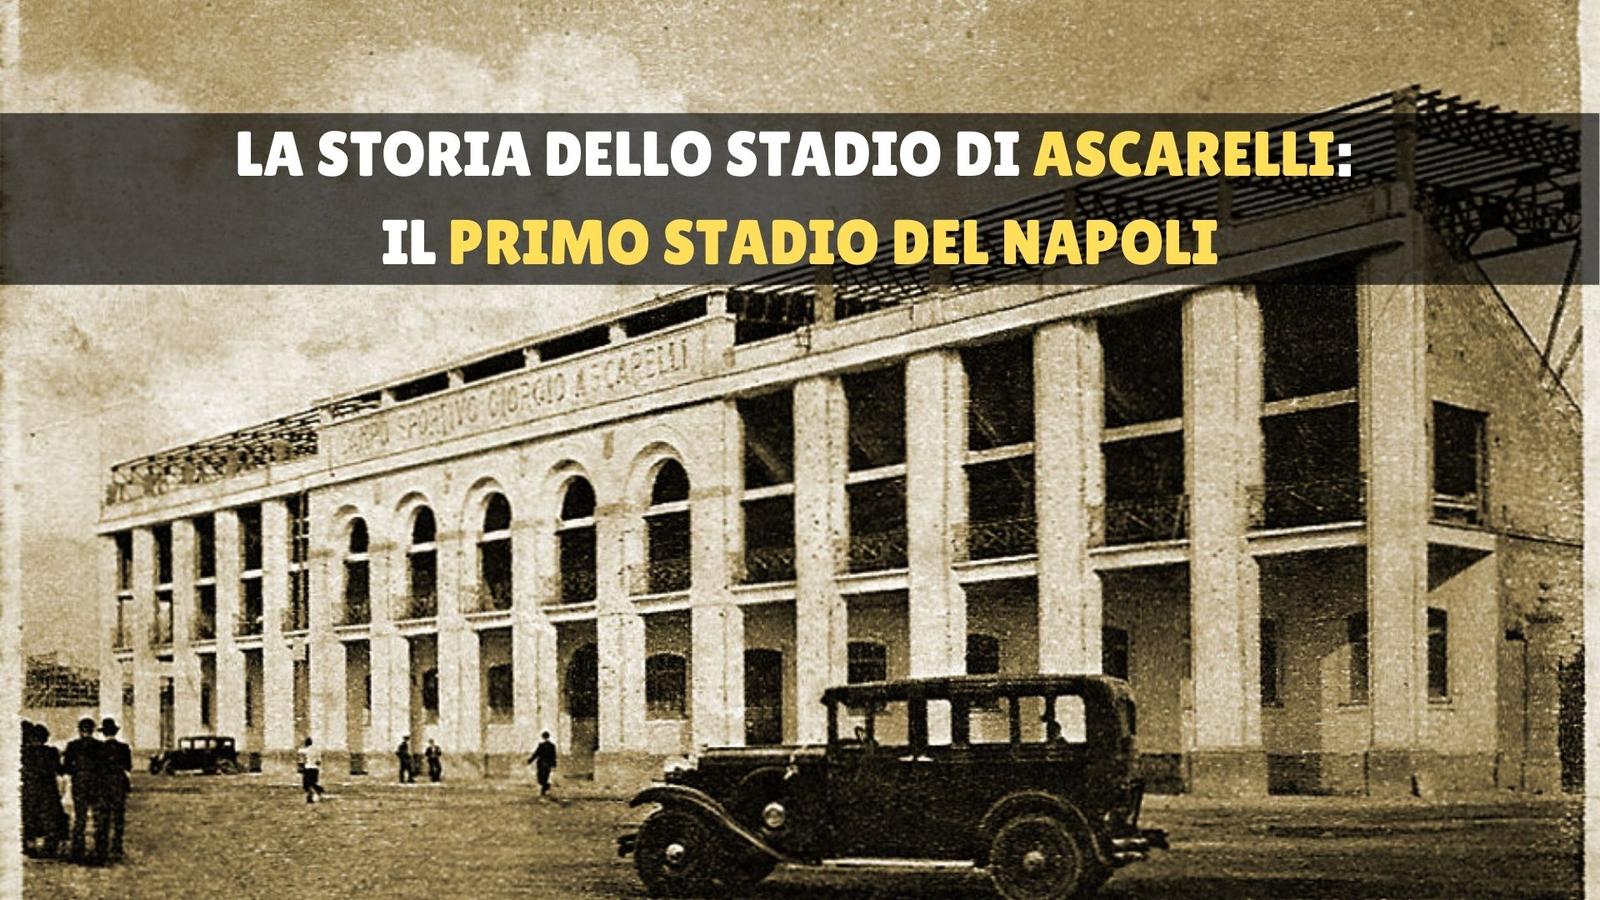 Stadio Ascarelli, il primo stadio del Napoli e la sua travagliata storia